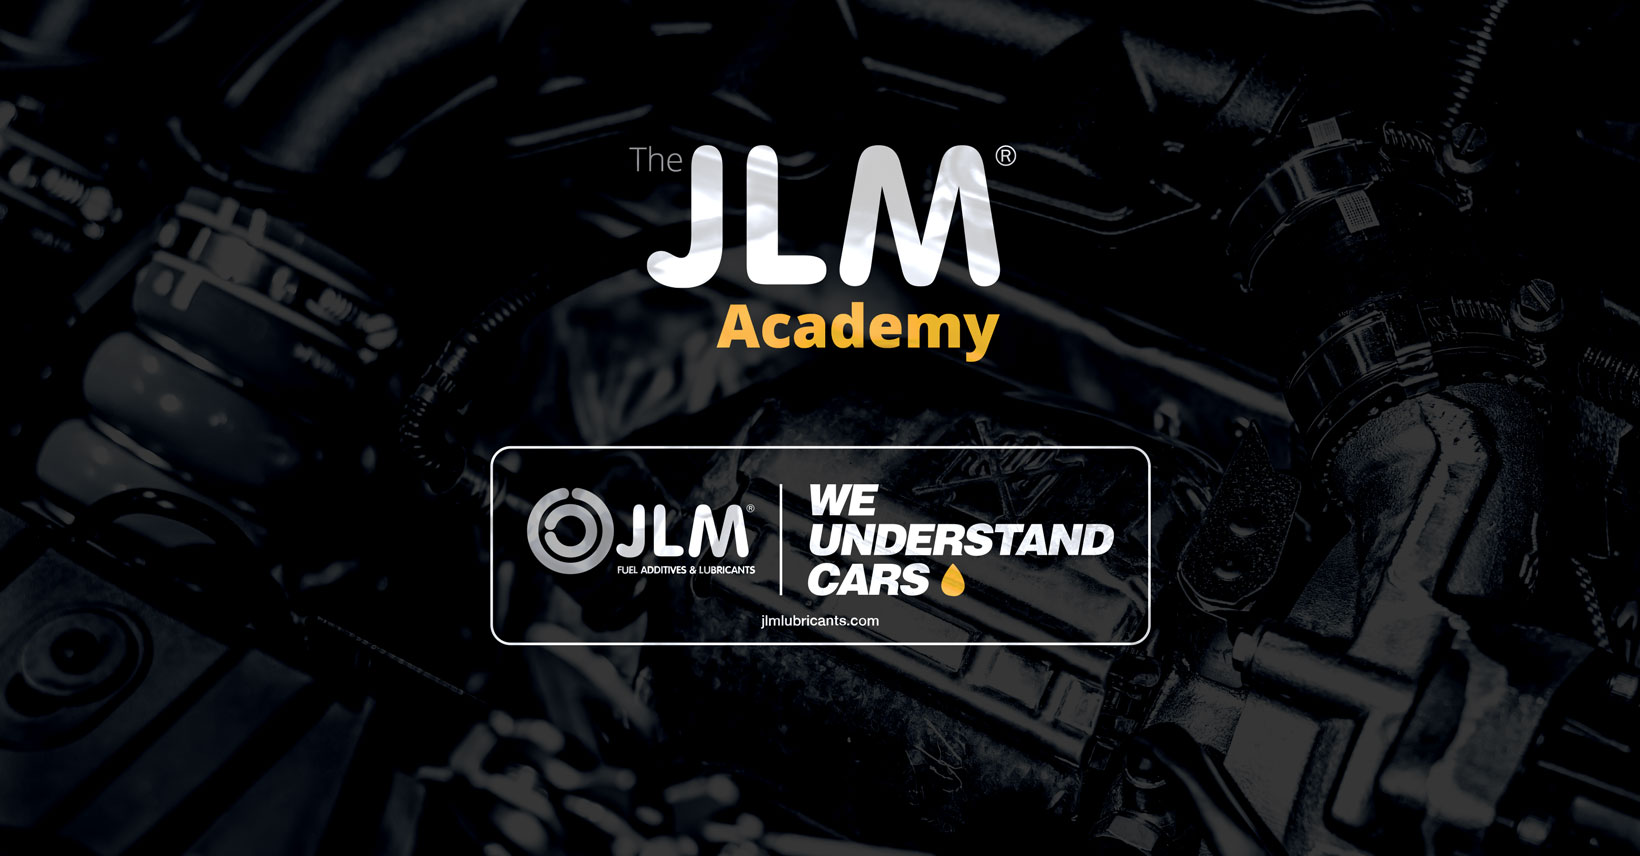 The JLM Academy